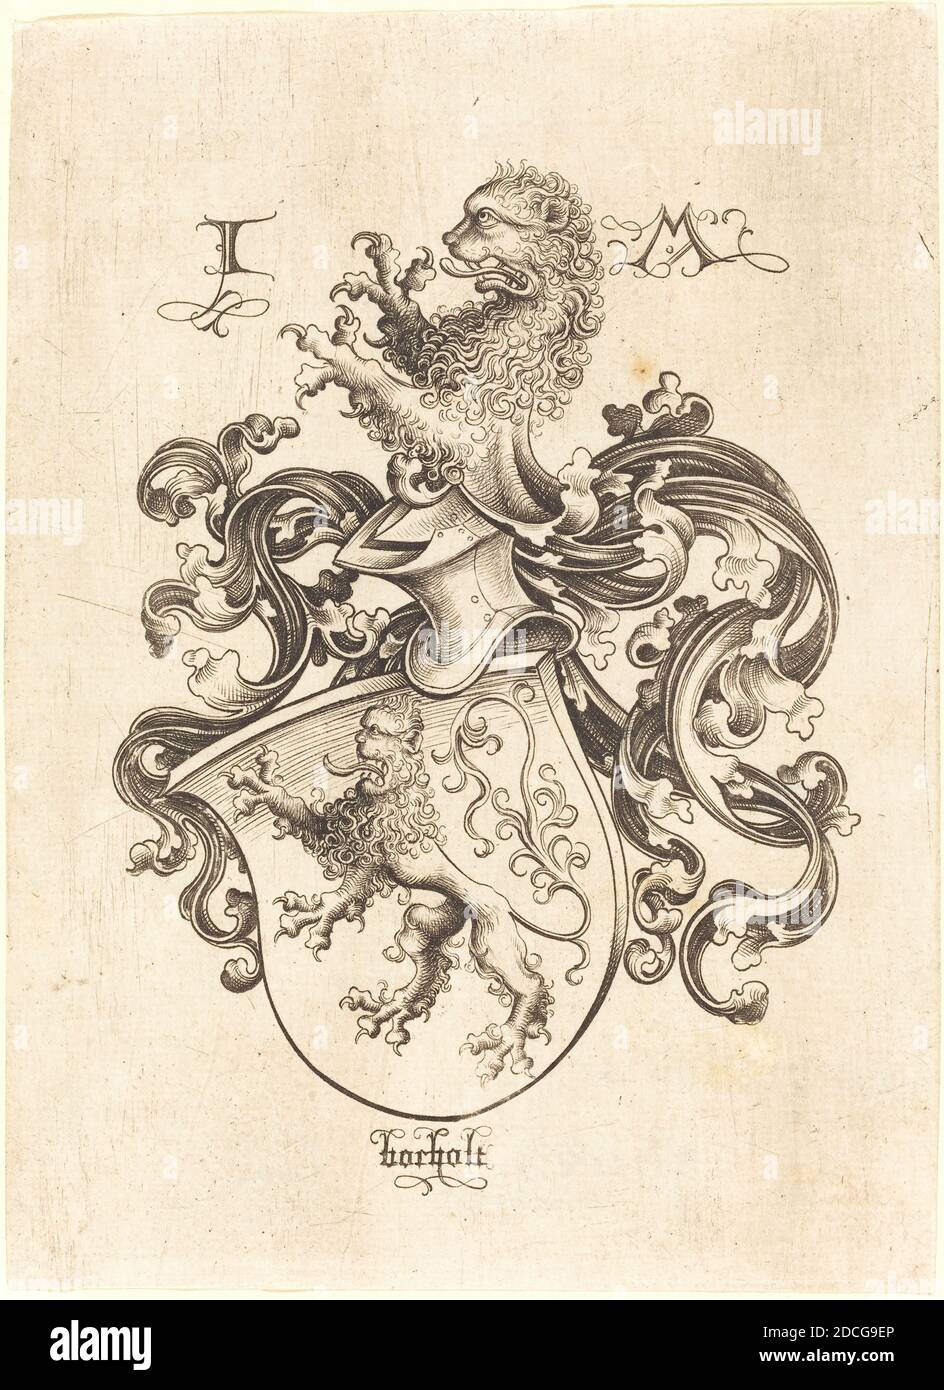 Israhel van Meckenem, (artist), German, c. 1445 - 1503, Coat of Arms with Lion, c. 1480/1490, engraving Stock Photo